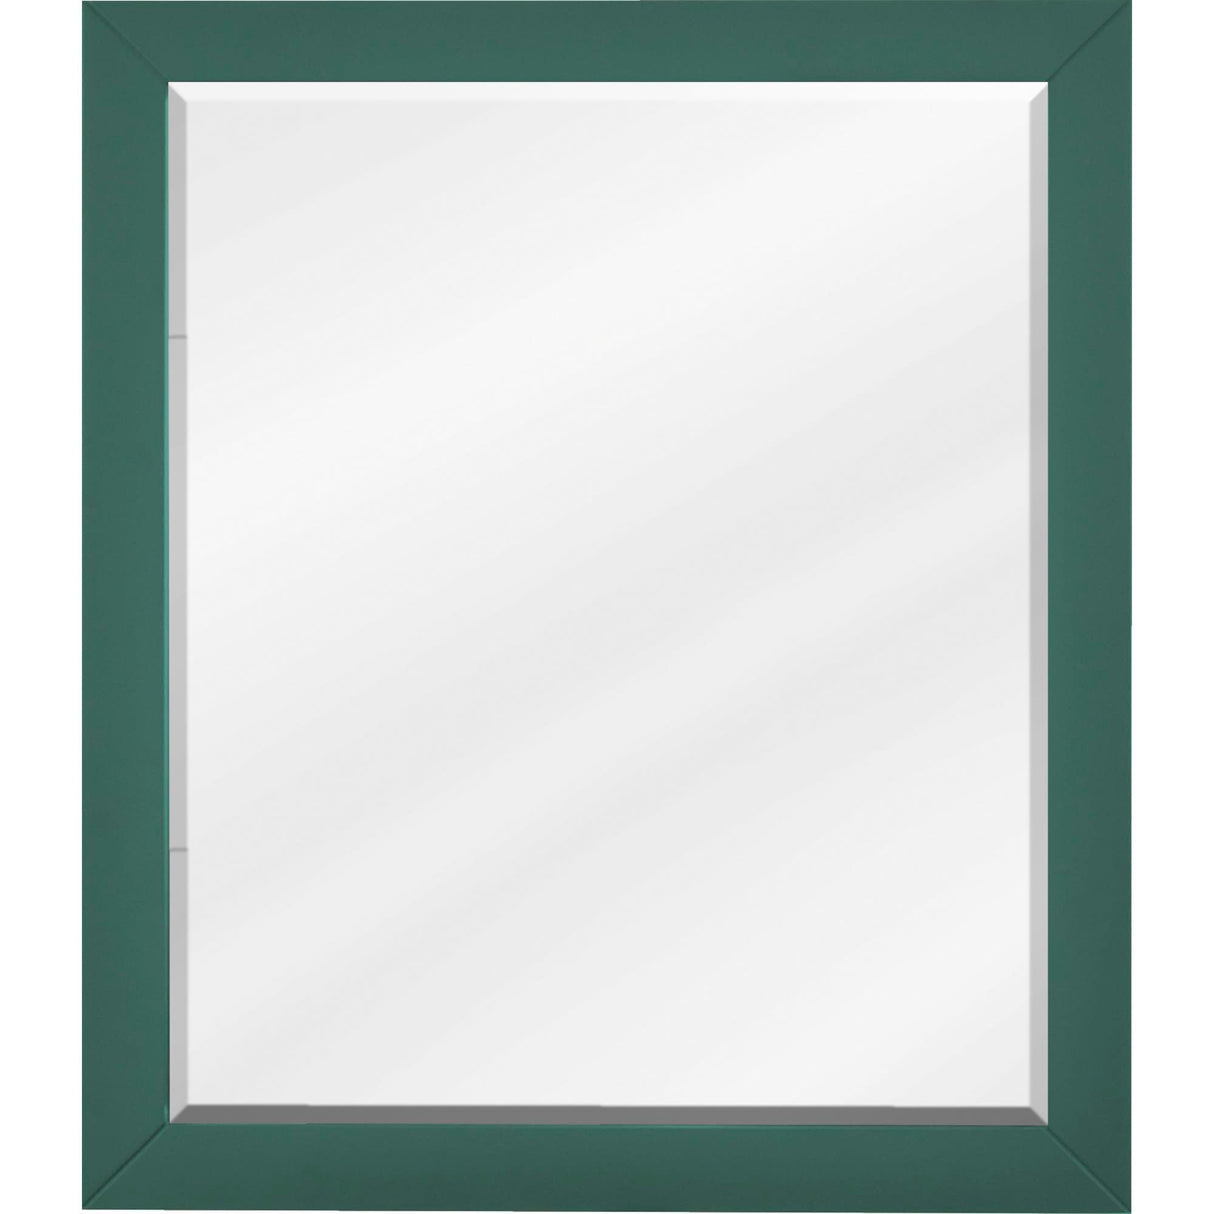 Jeffrey Alexander MIR2CAD-24-GN 24 W x 1" D x 28" H Forest Green Cade mirror